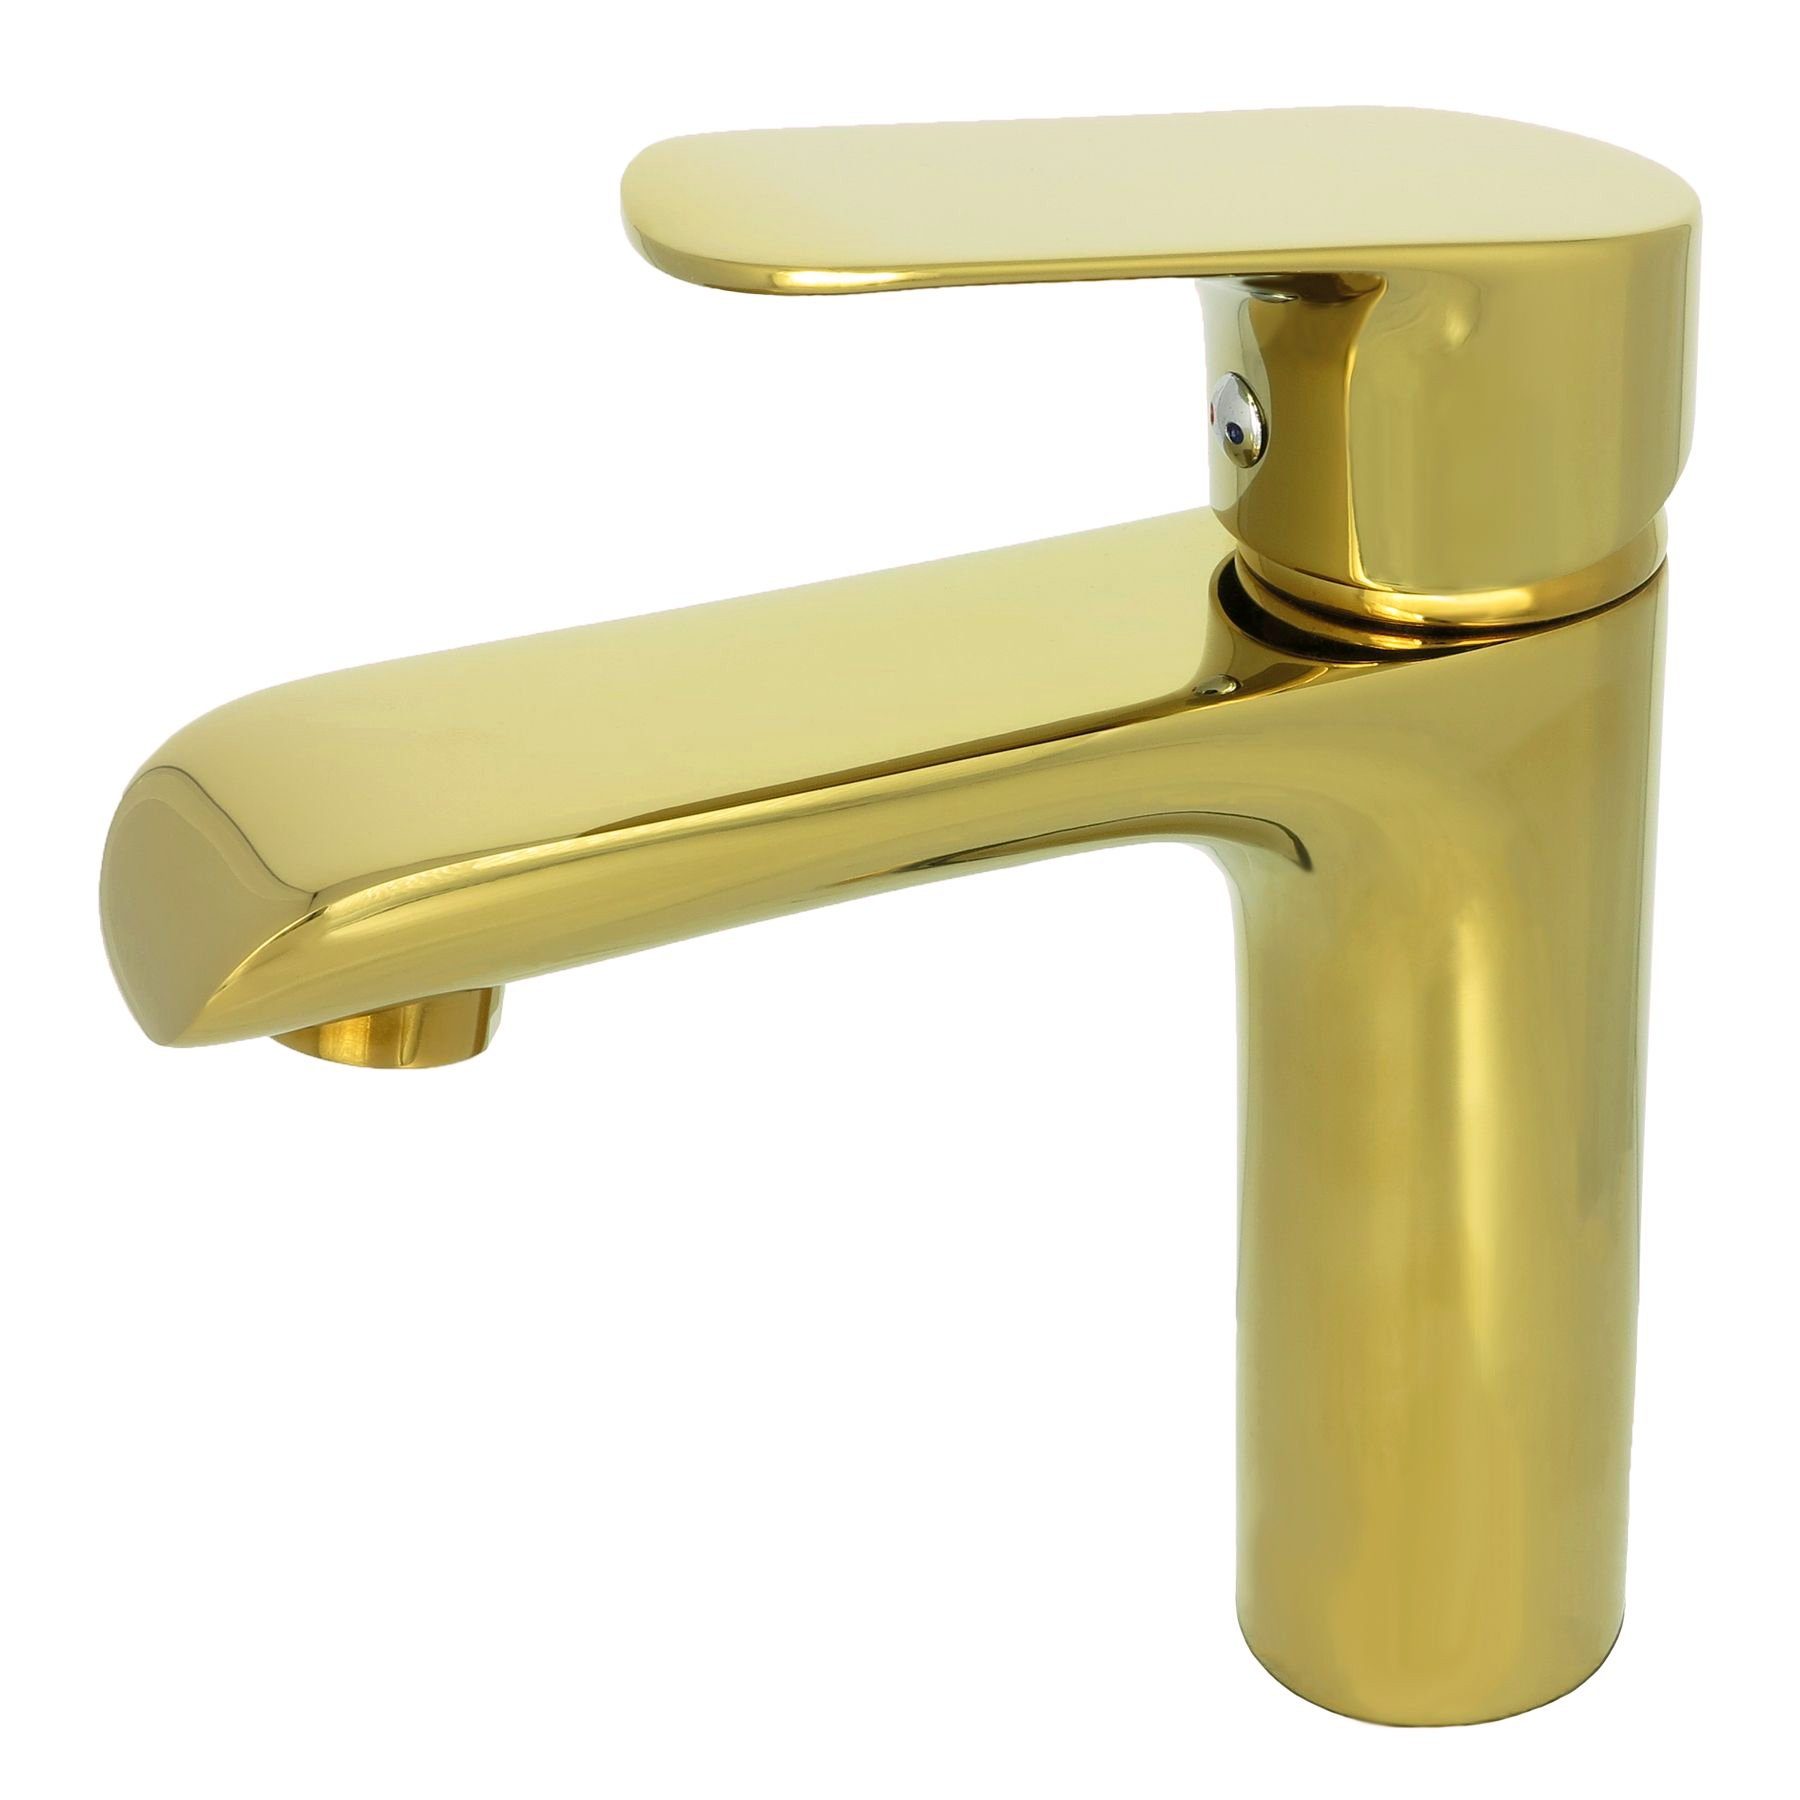 GOLD Messing PARMA-Serie Hoch Waschtischarmatur Waschtischmischer Höhe 30,5 cm 